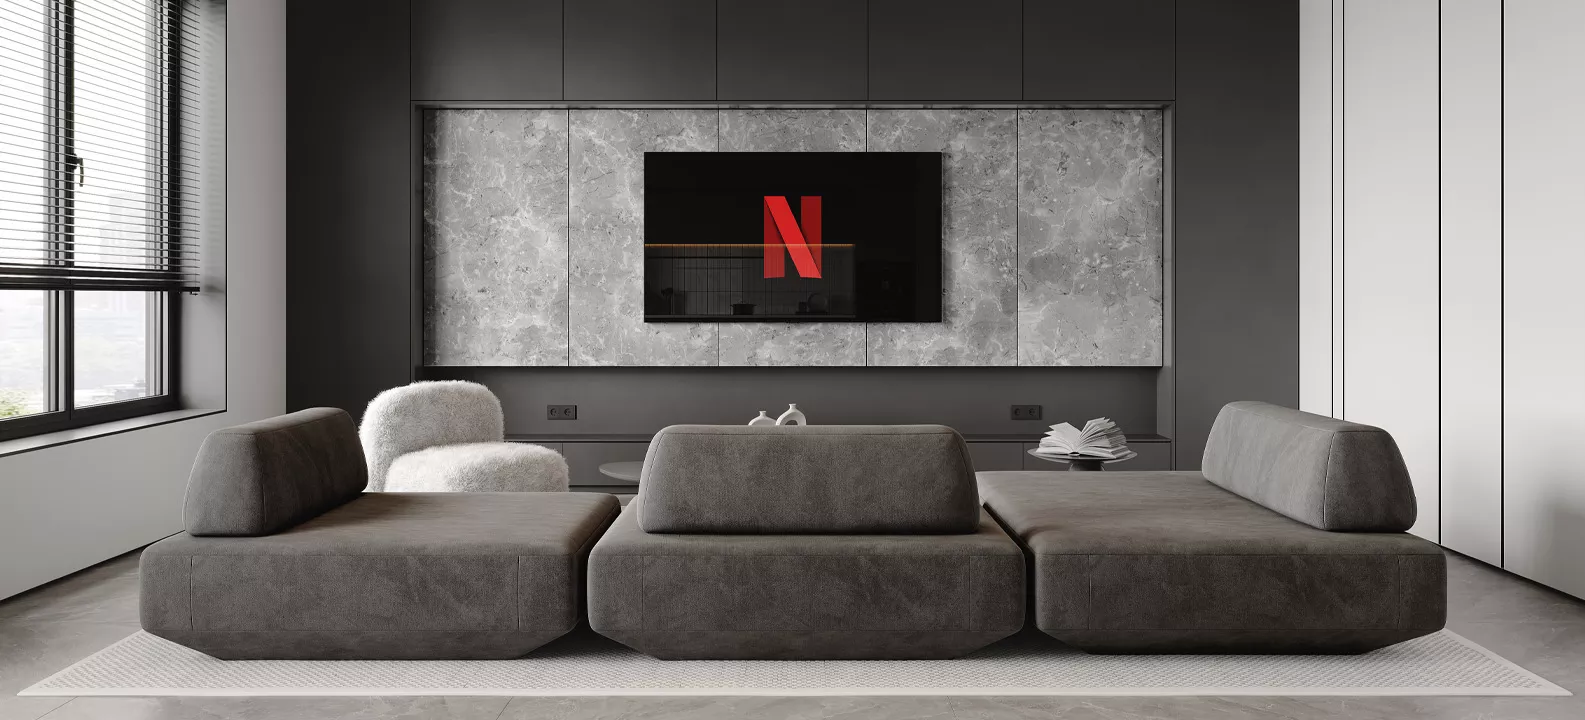 Visualisierung eines Wohnzimmers mit großer Couch und einem Fernseher, auf dem das Netflix-Symbol zu sehen ist